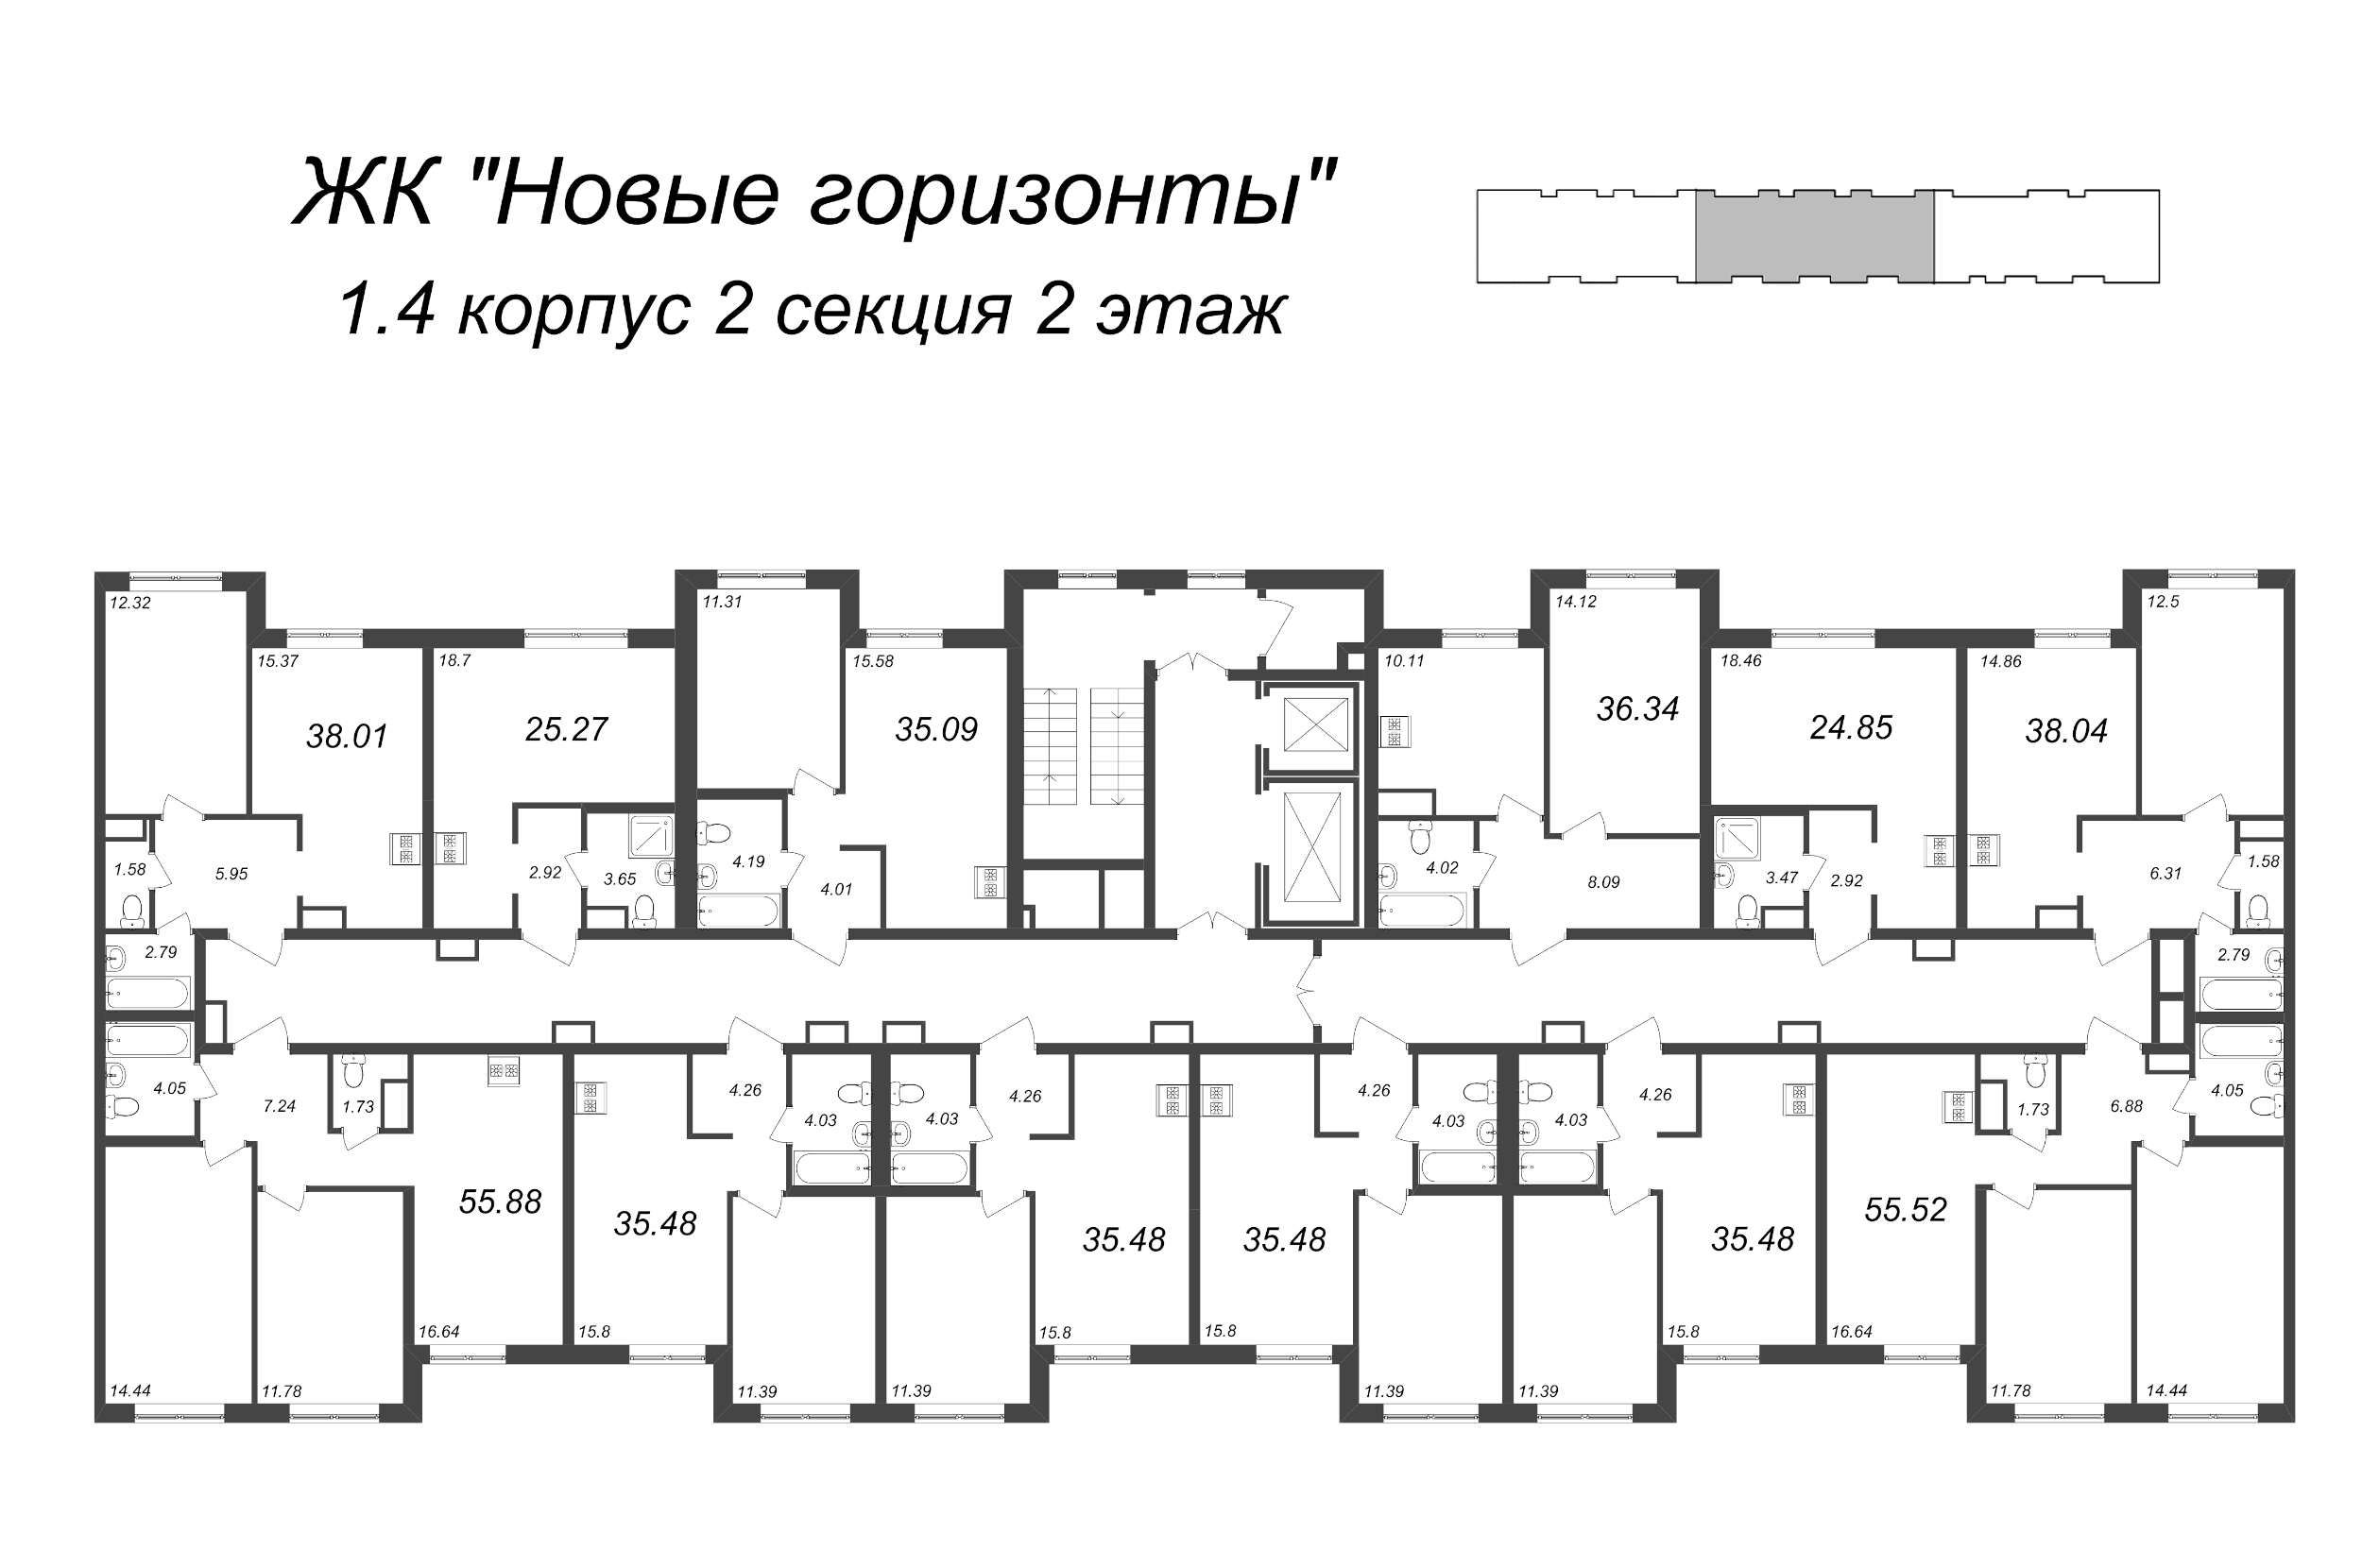 Квартира-студия, 24.85 м² в ЖК "Новые горизонты" - планировка этажа